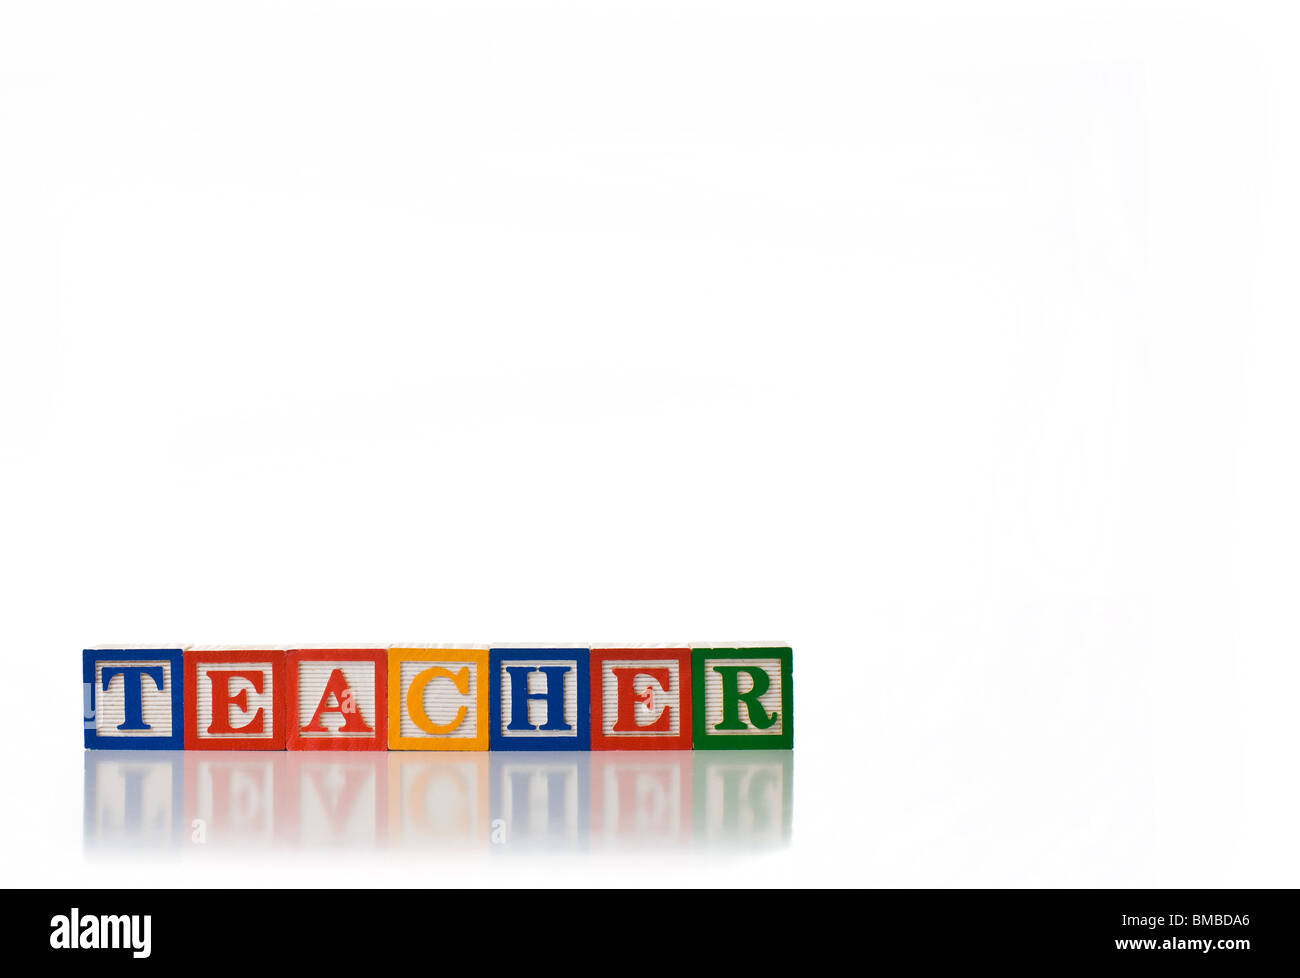 Colorful children's blocks spelling TEACHER Stock Photo